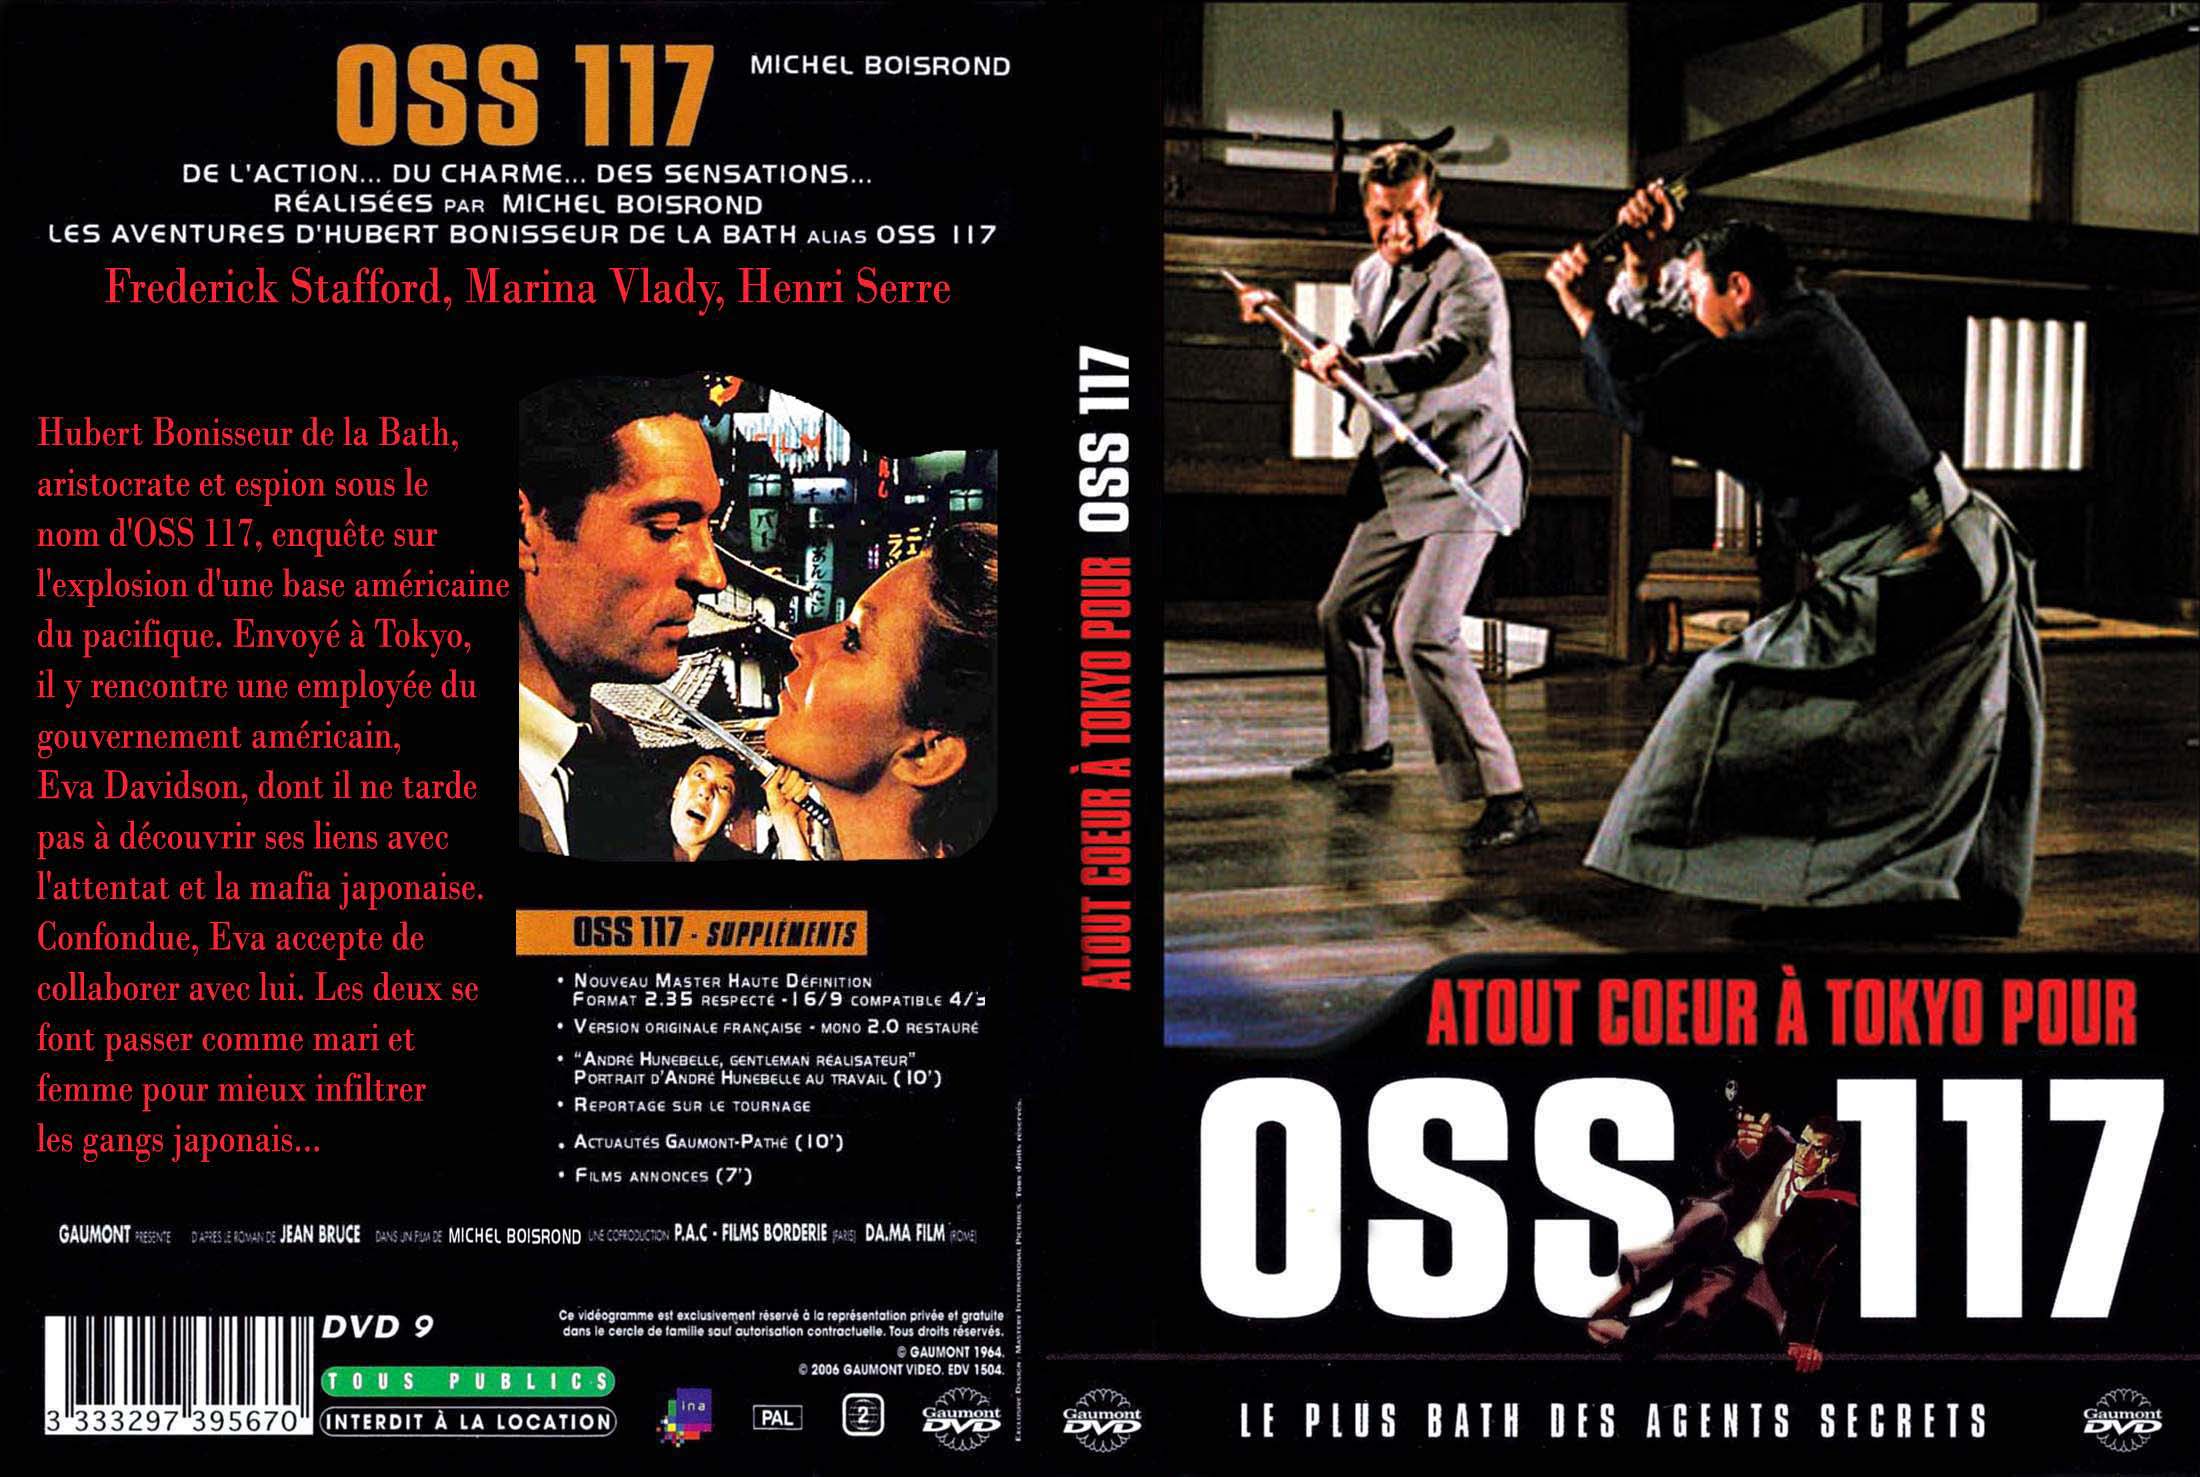 Jaquette DVD Atout coeur  Tokyo pour OSS 117 custom